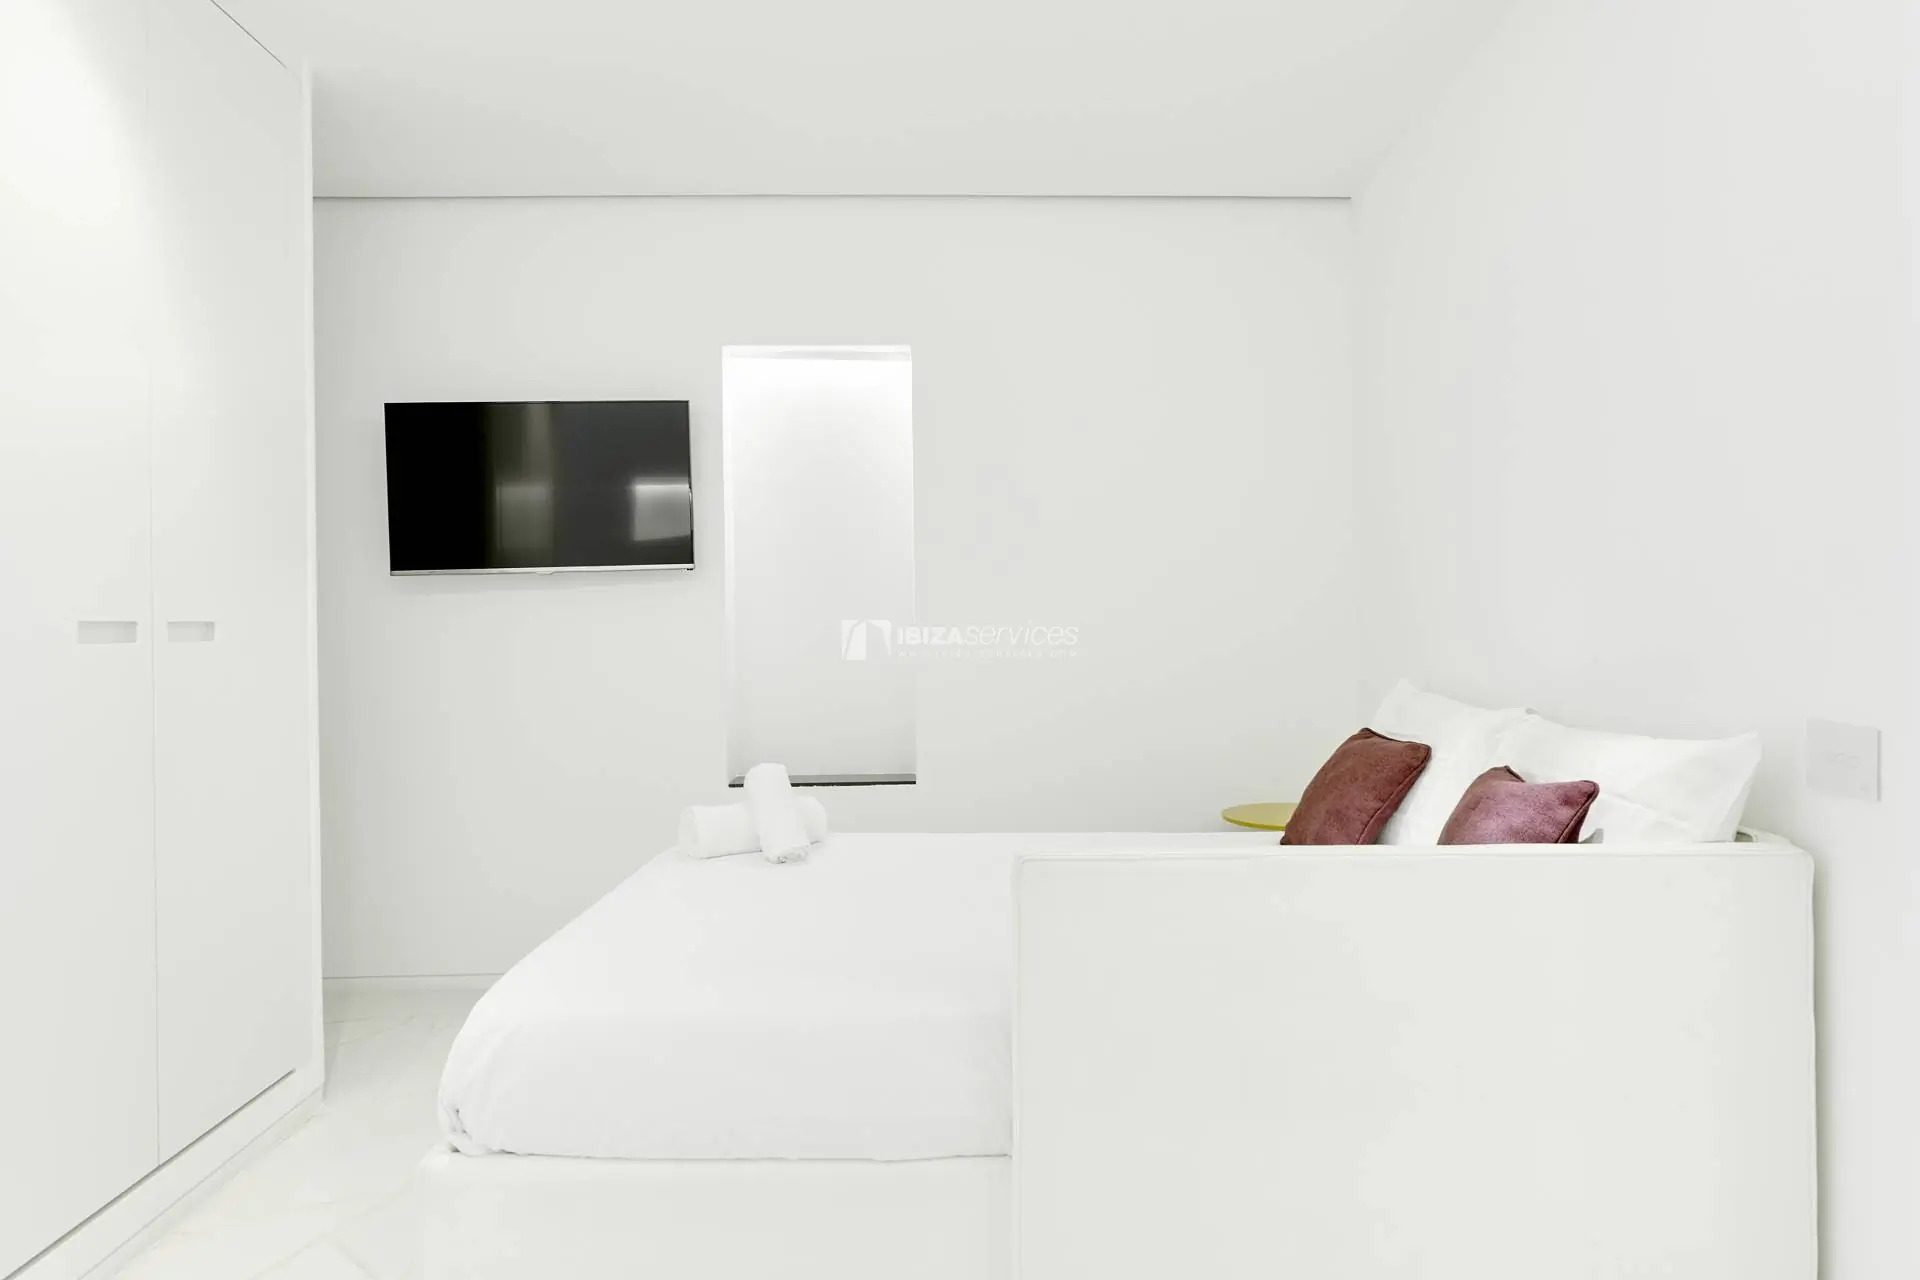 1041 Las Boas de Ibiza Alquiler lujoso apartamento de 2 habitaciones.